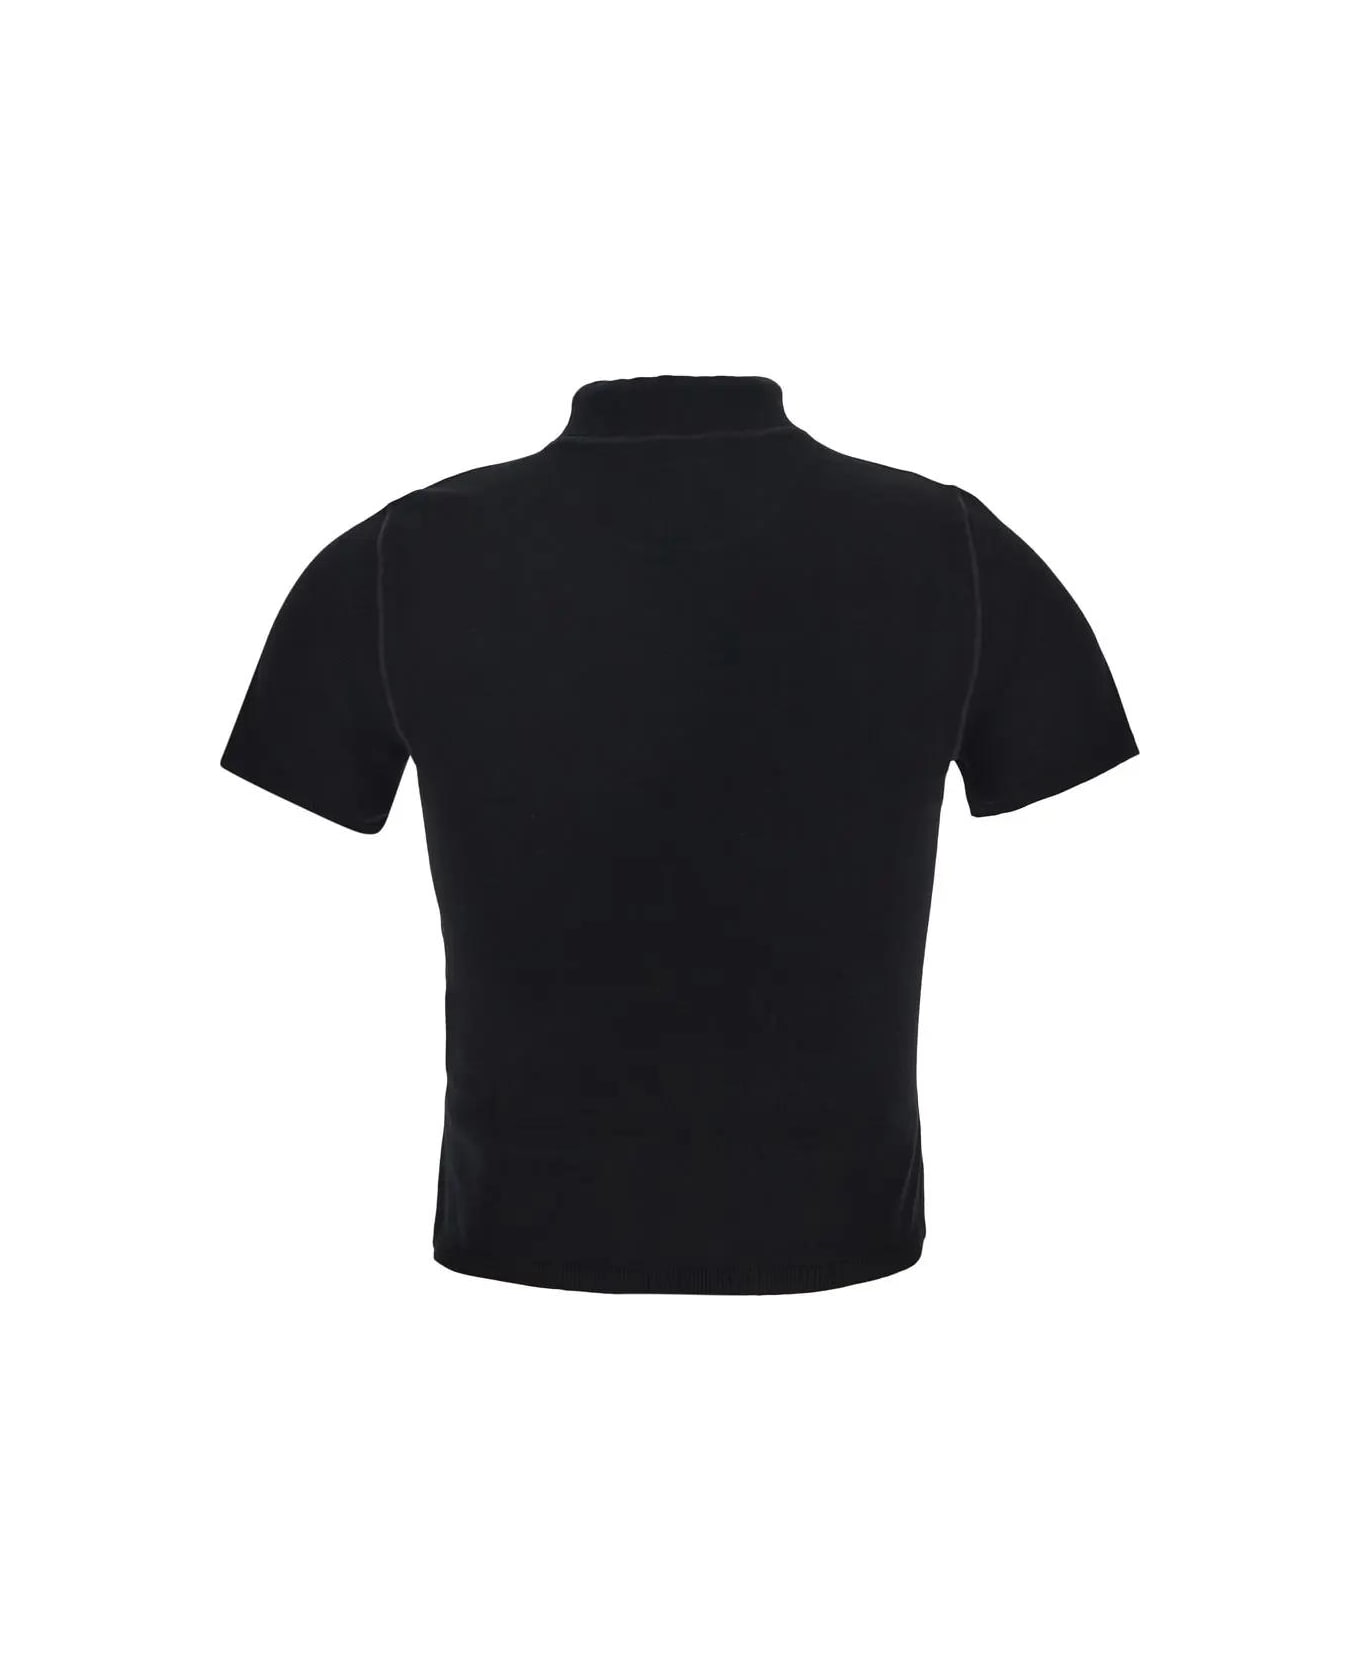 Alexander Wang Turtleneck Top - Black Tシャツ